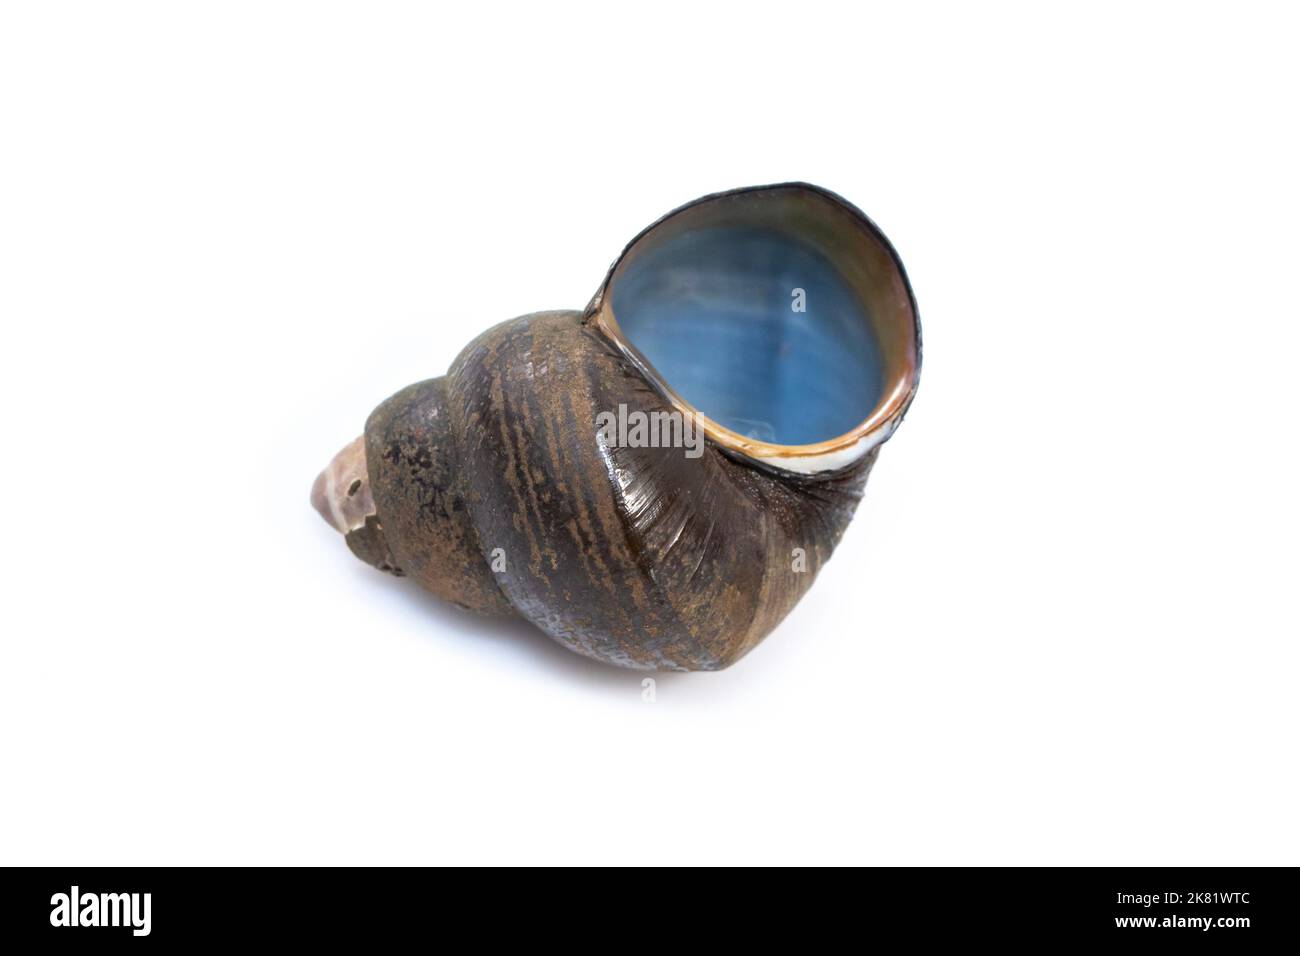 Image of river snail (Filopaludina martensi) isolated on white background. Animal. Stock Photo